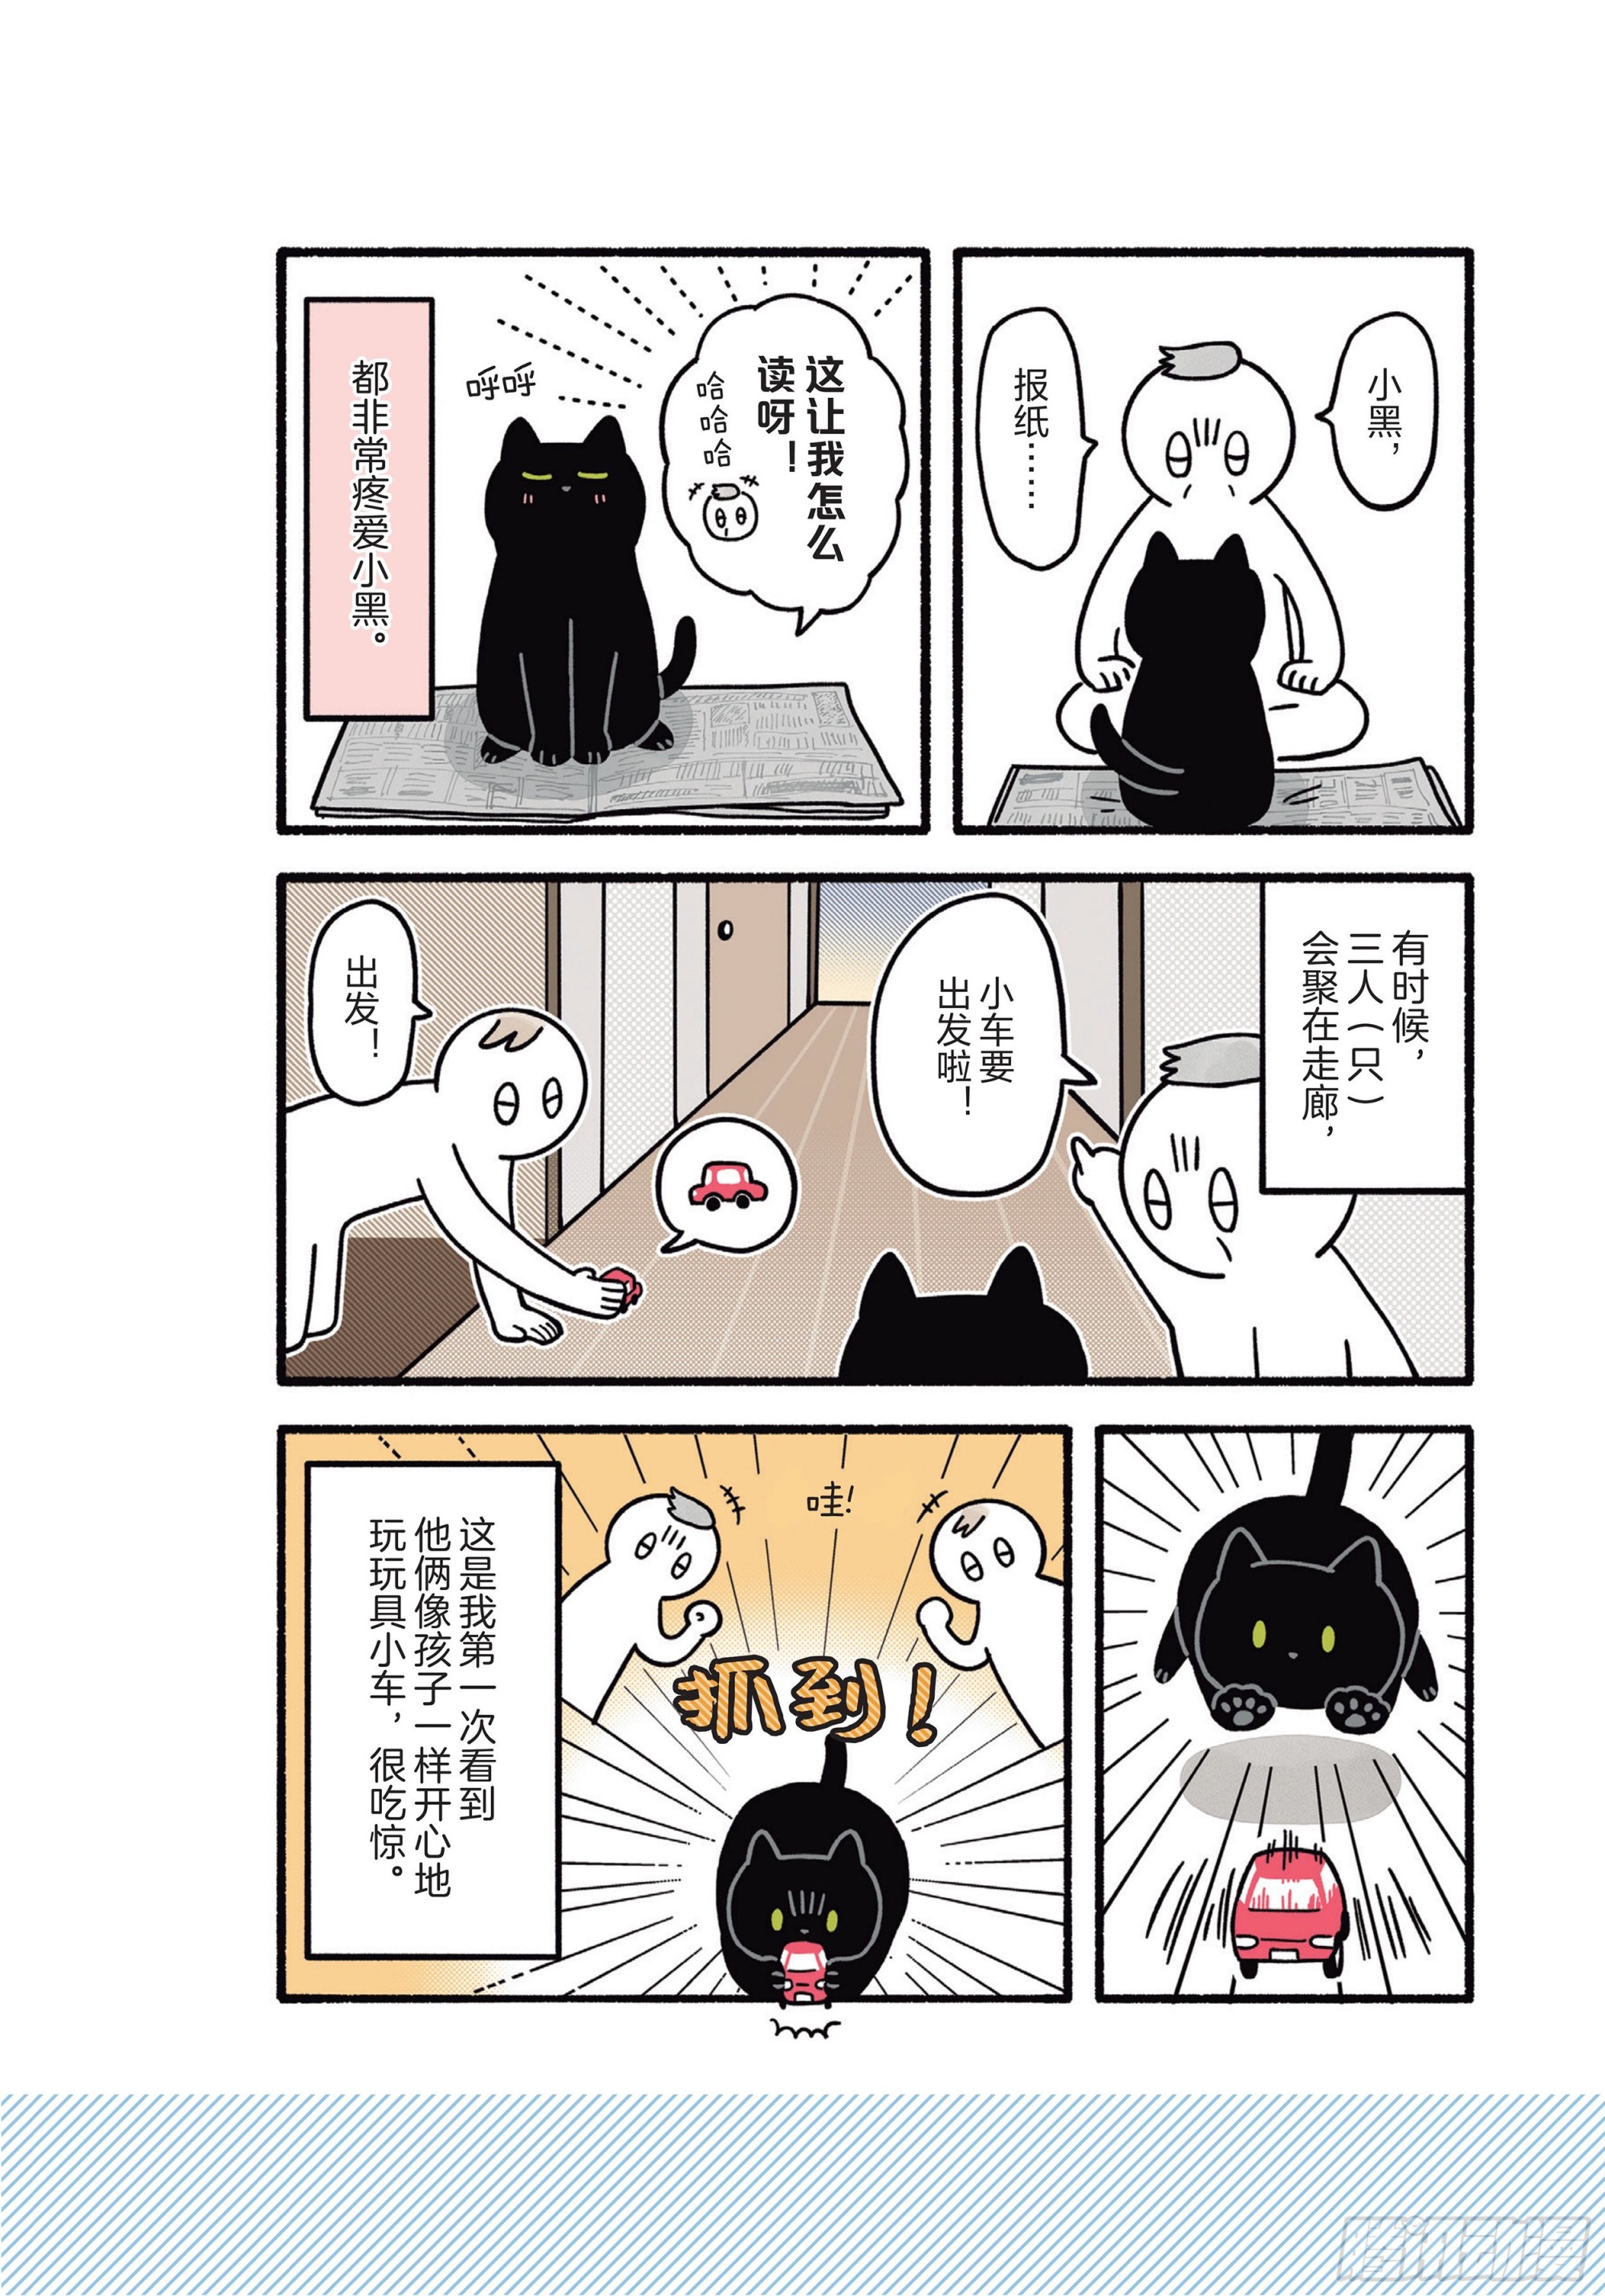 貓咪奇怪行爲圖鑑 - 第7章 開心 - 2